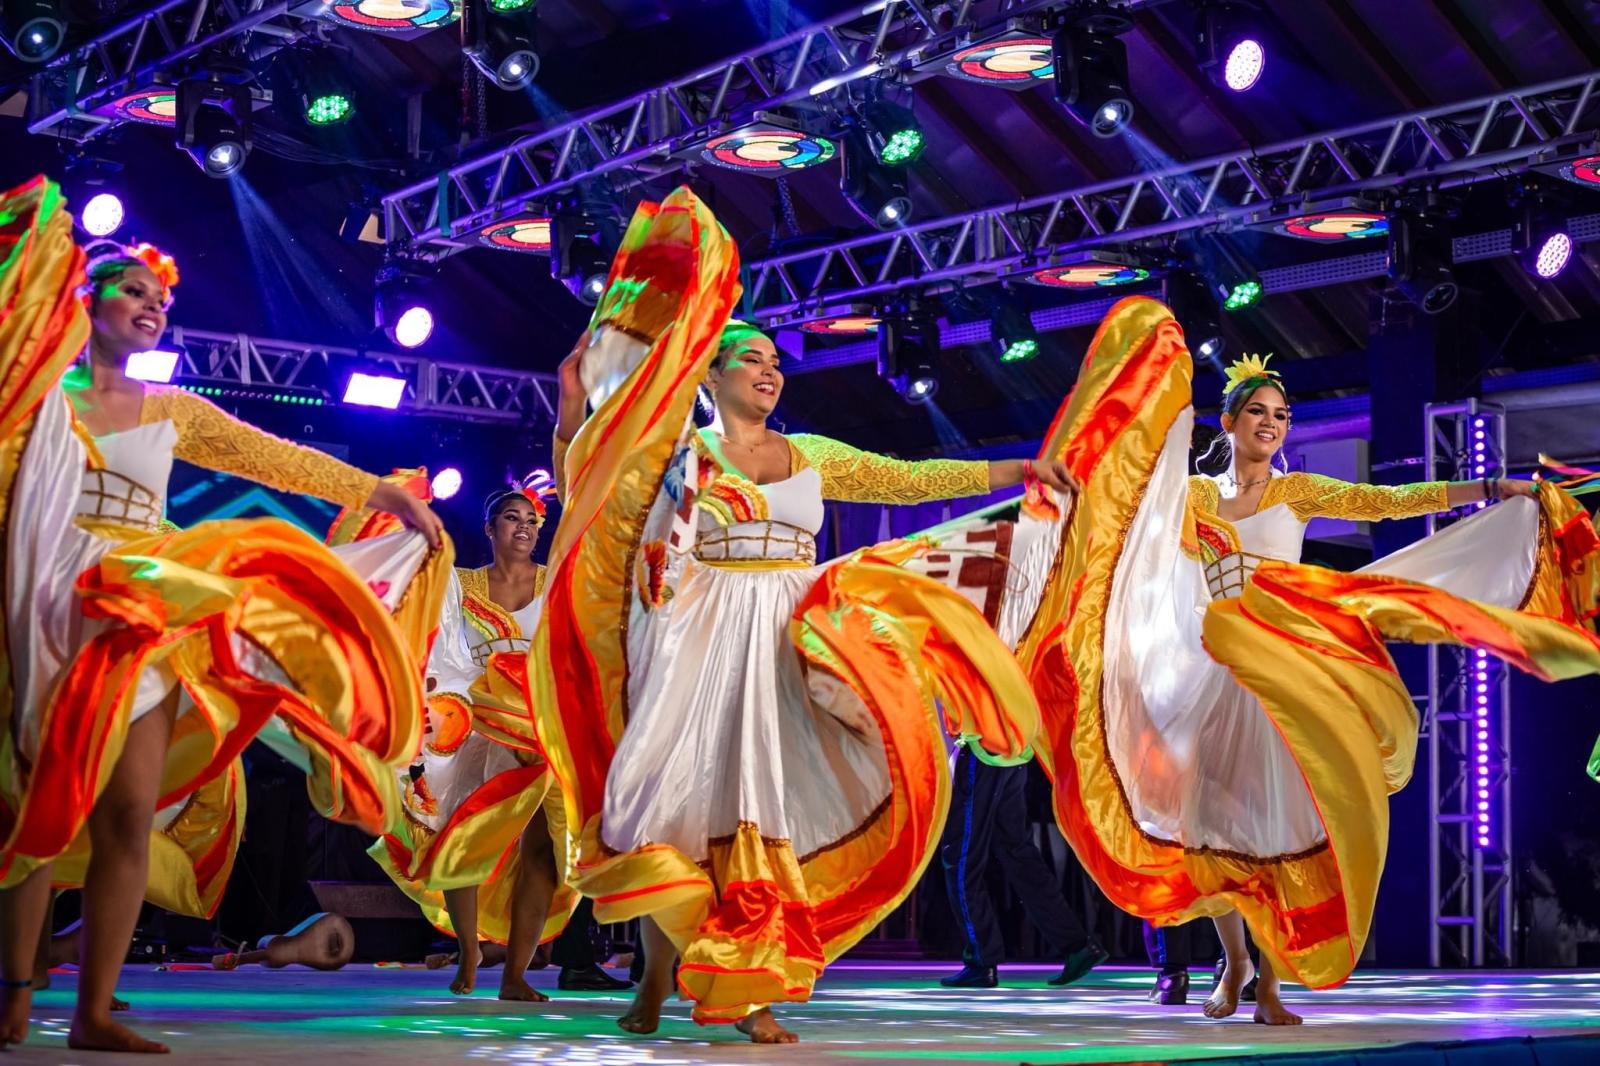 Grupo de dança Flor de Atalaia, do Mato Grosso do Sul. A foto mostra quatro moças em um palco, dançando com vestidos brancos de saia rodada com detalhes em amarelo e vermelho.